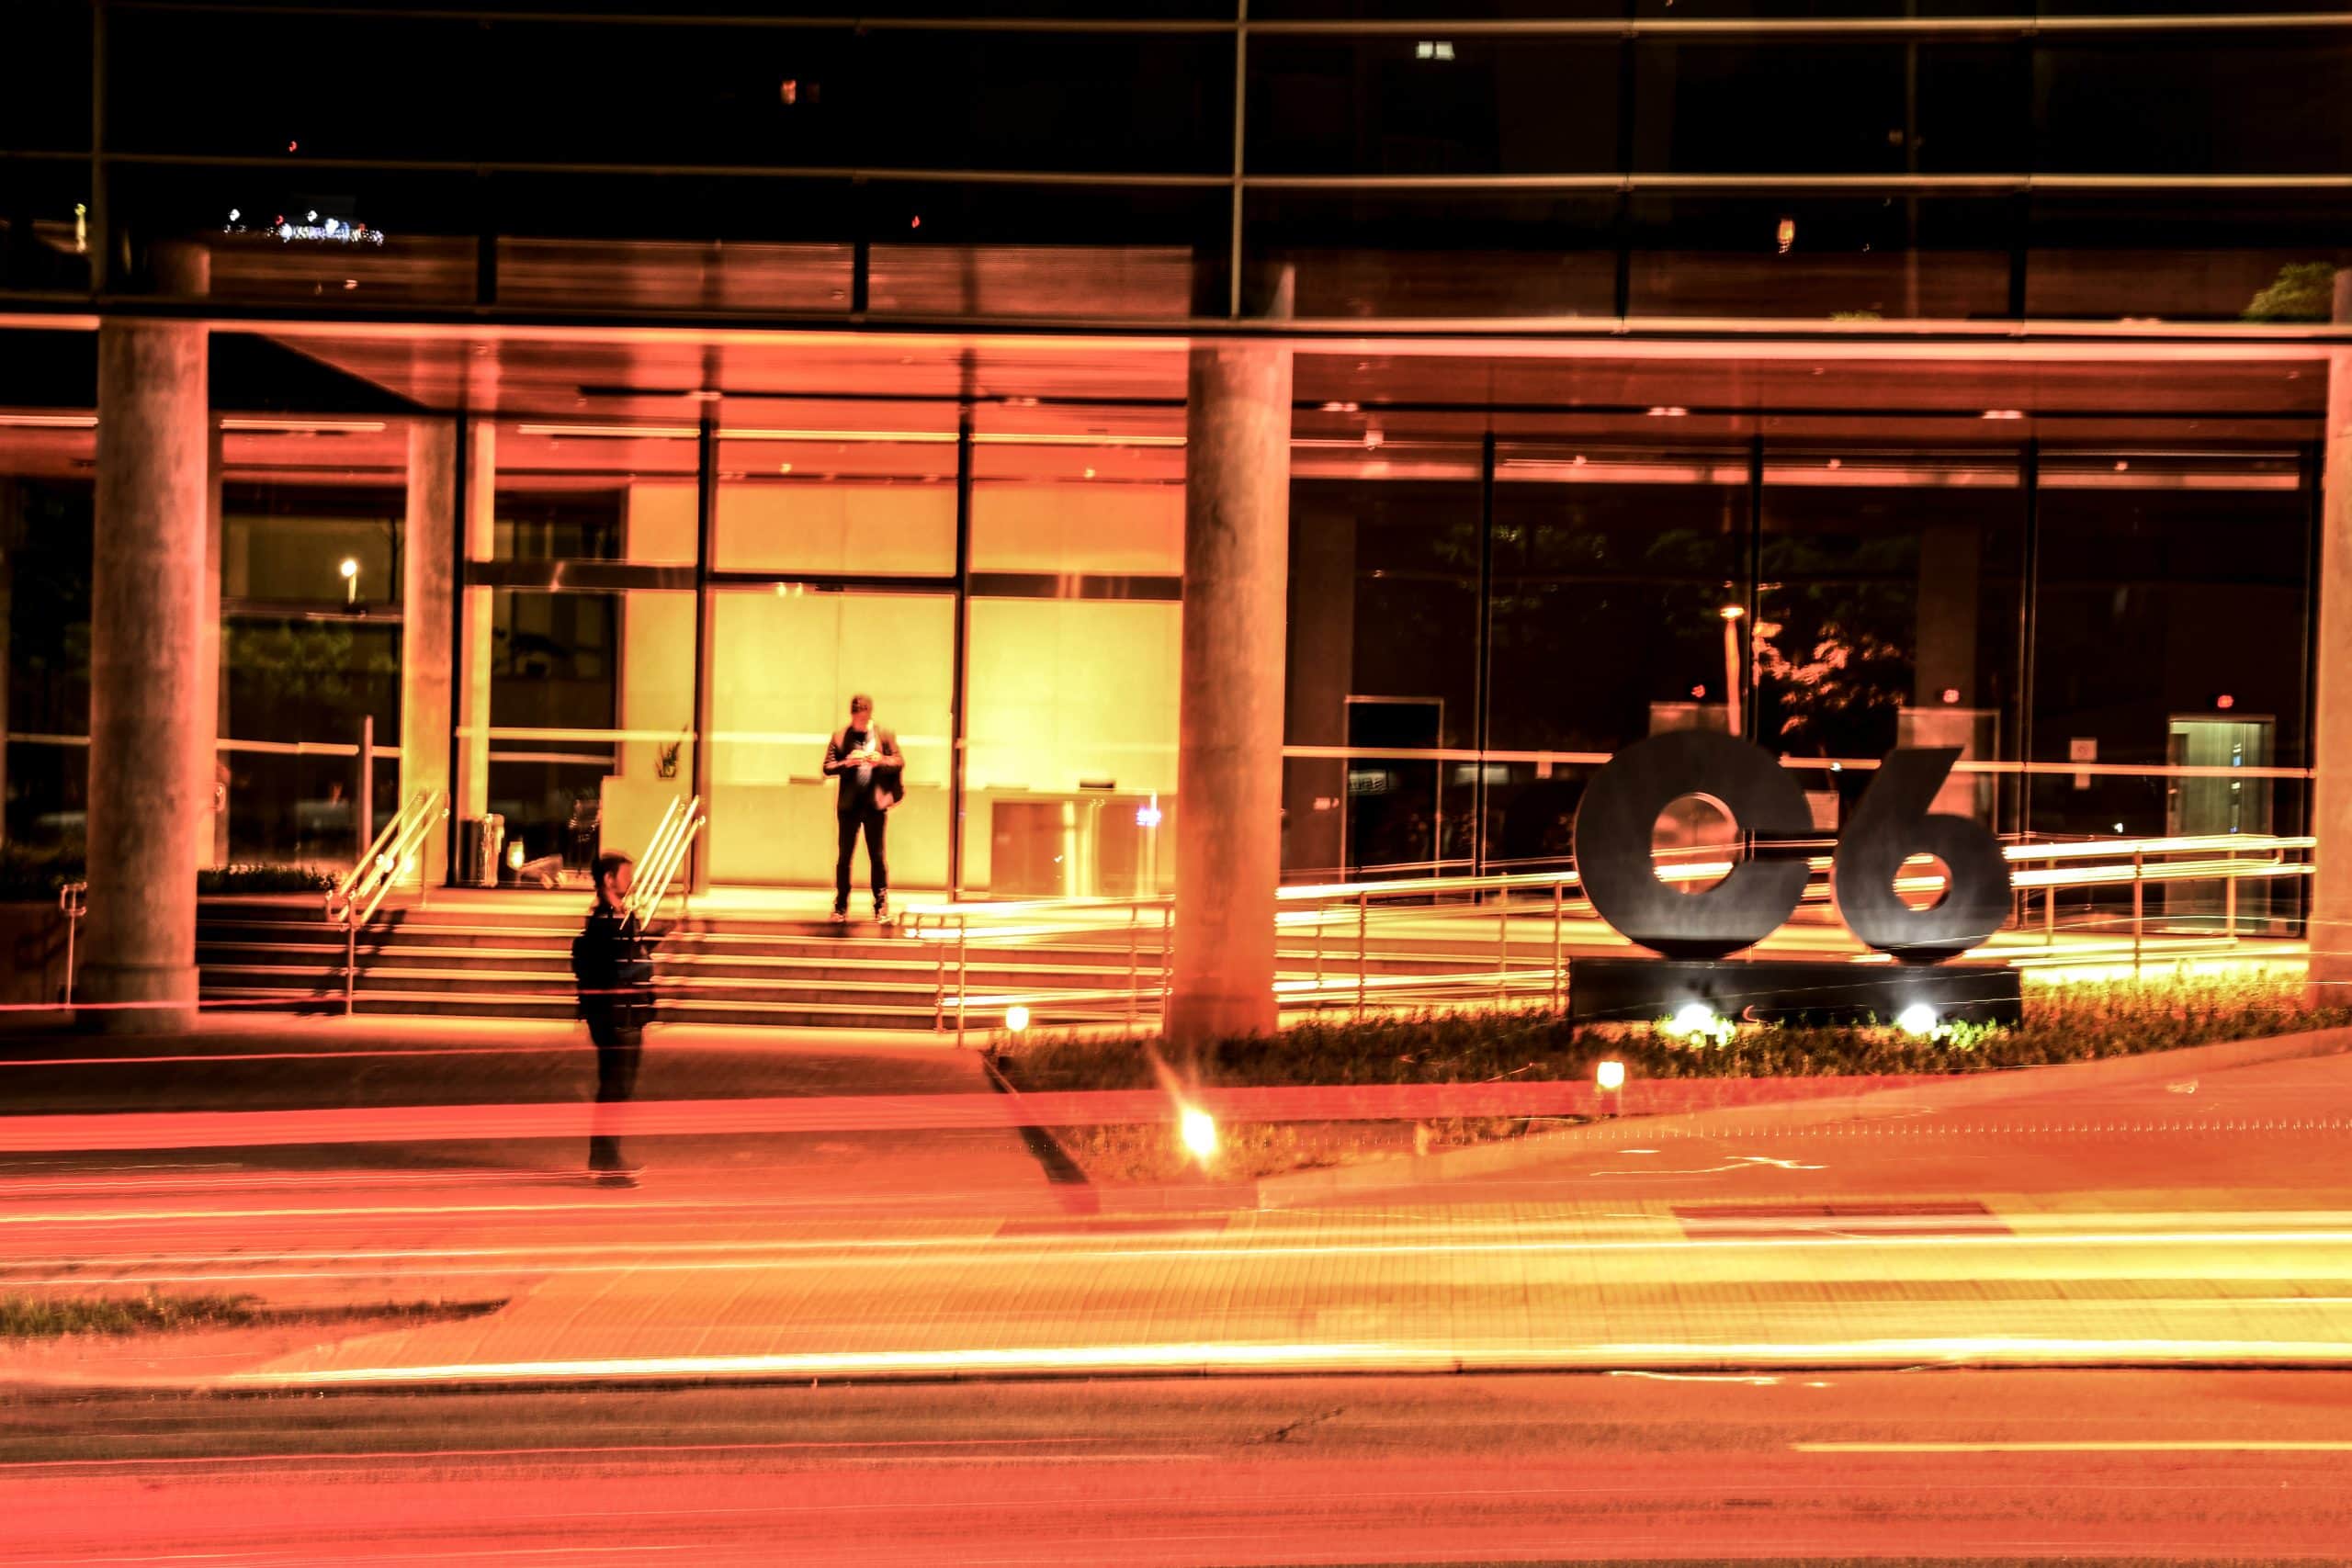 Foto da fachada do prédio do C6 Bank durante a noite com time lapse de carros passando na avenida em frente com luzes amarelas